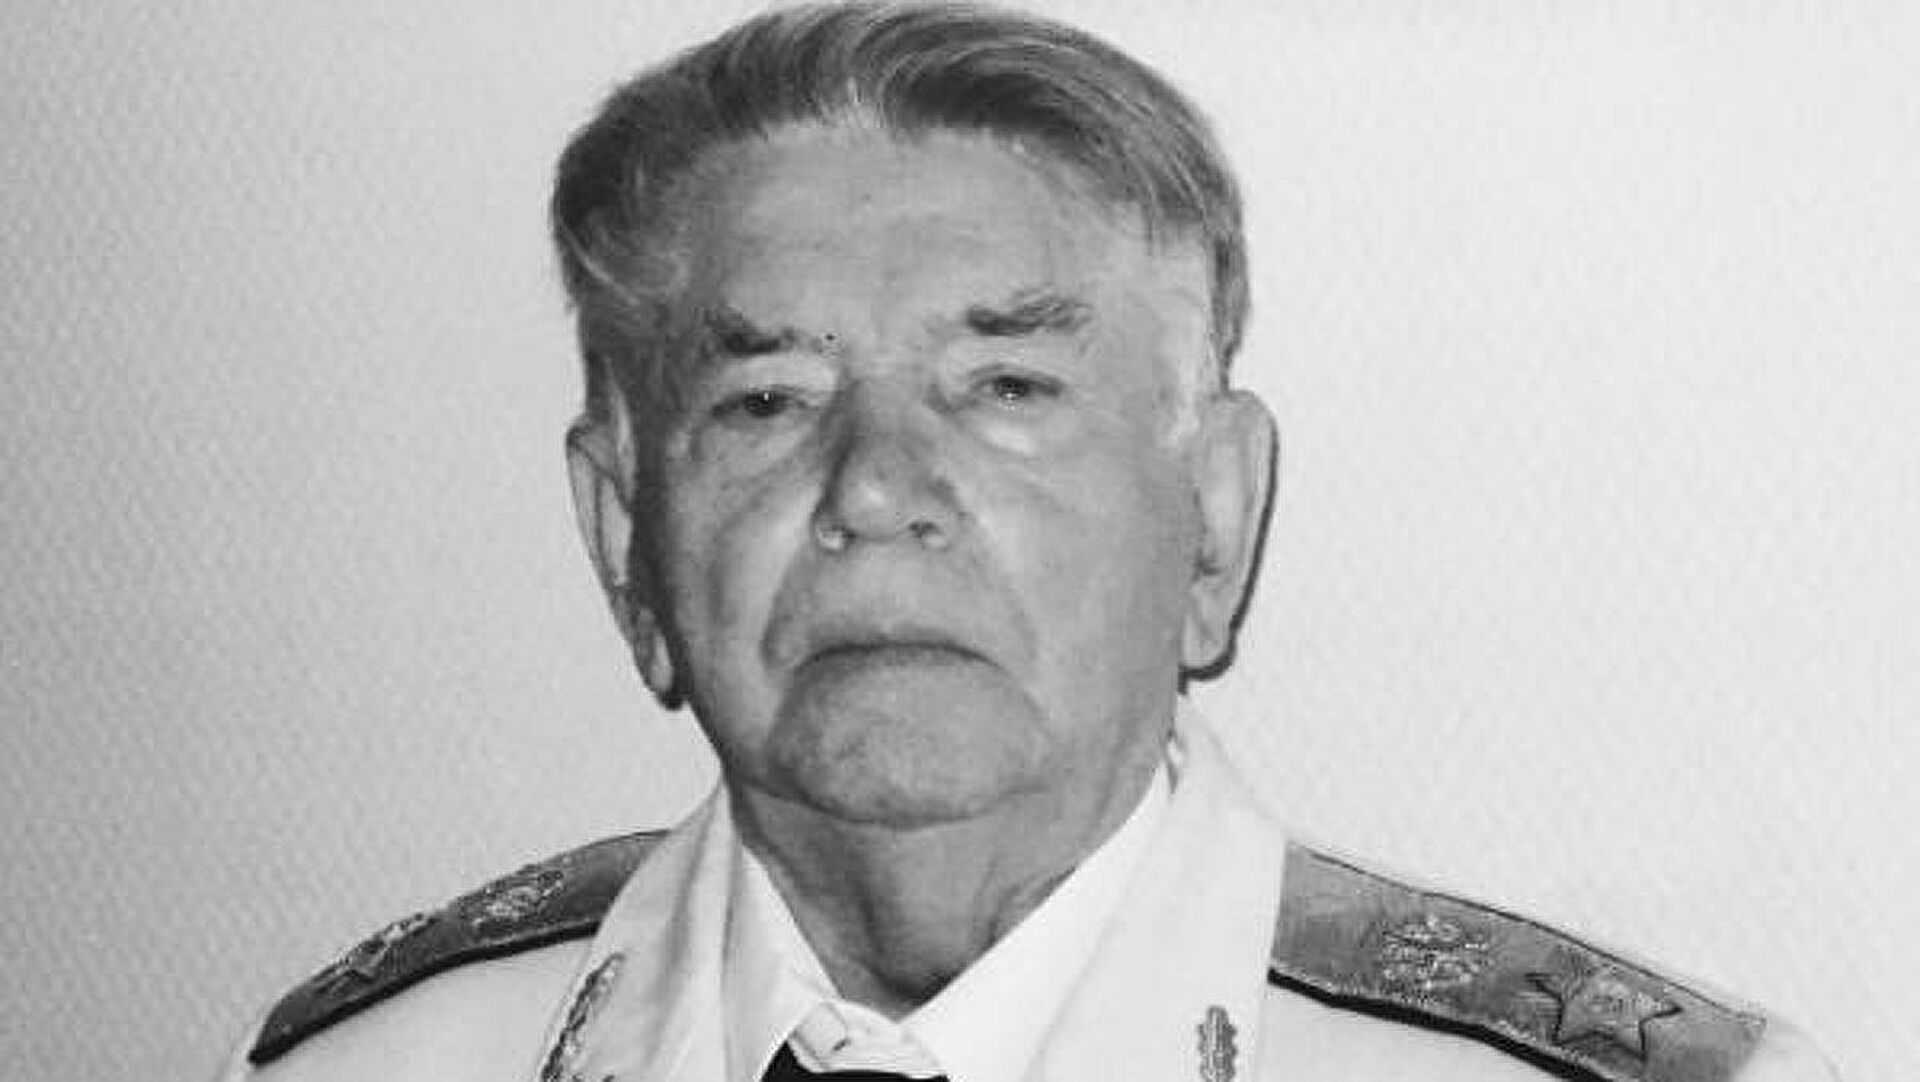 Сегодня скончался Александр Сухарев, занимавший должность генерального прокурора СССР